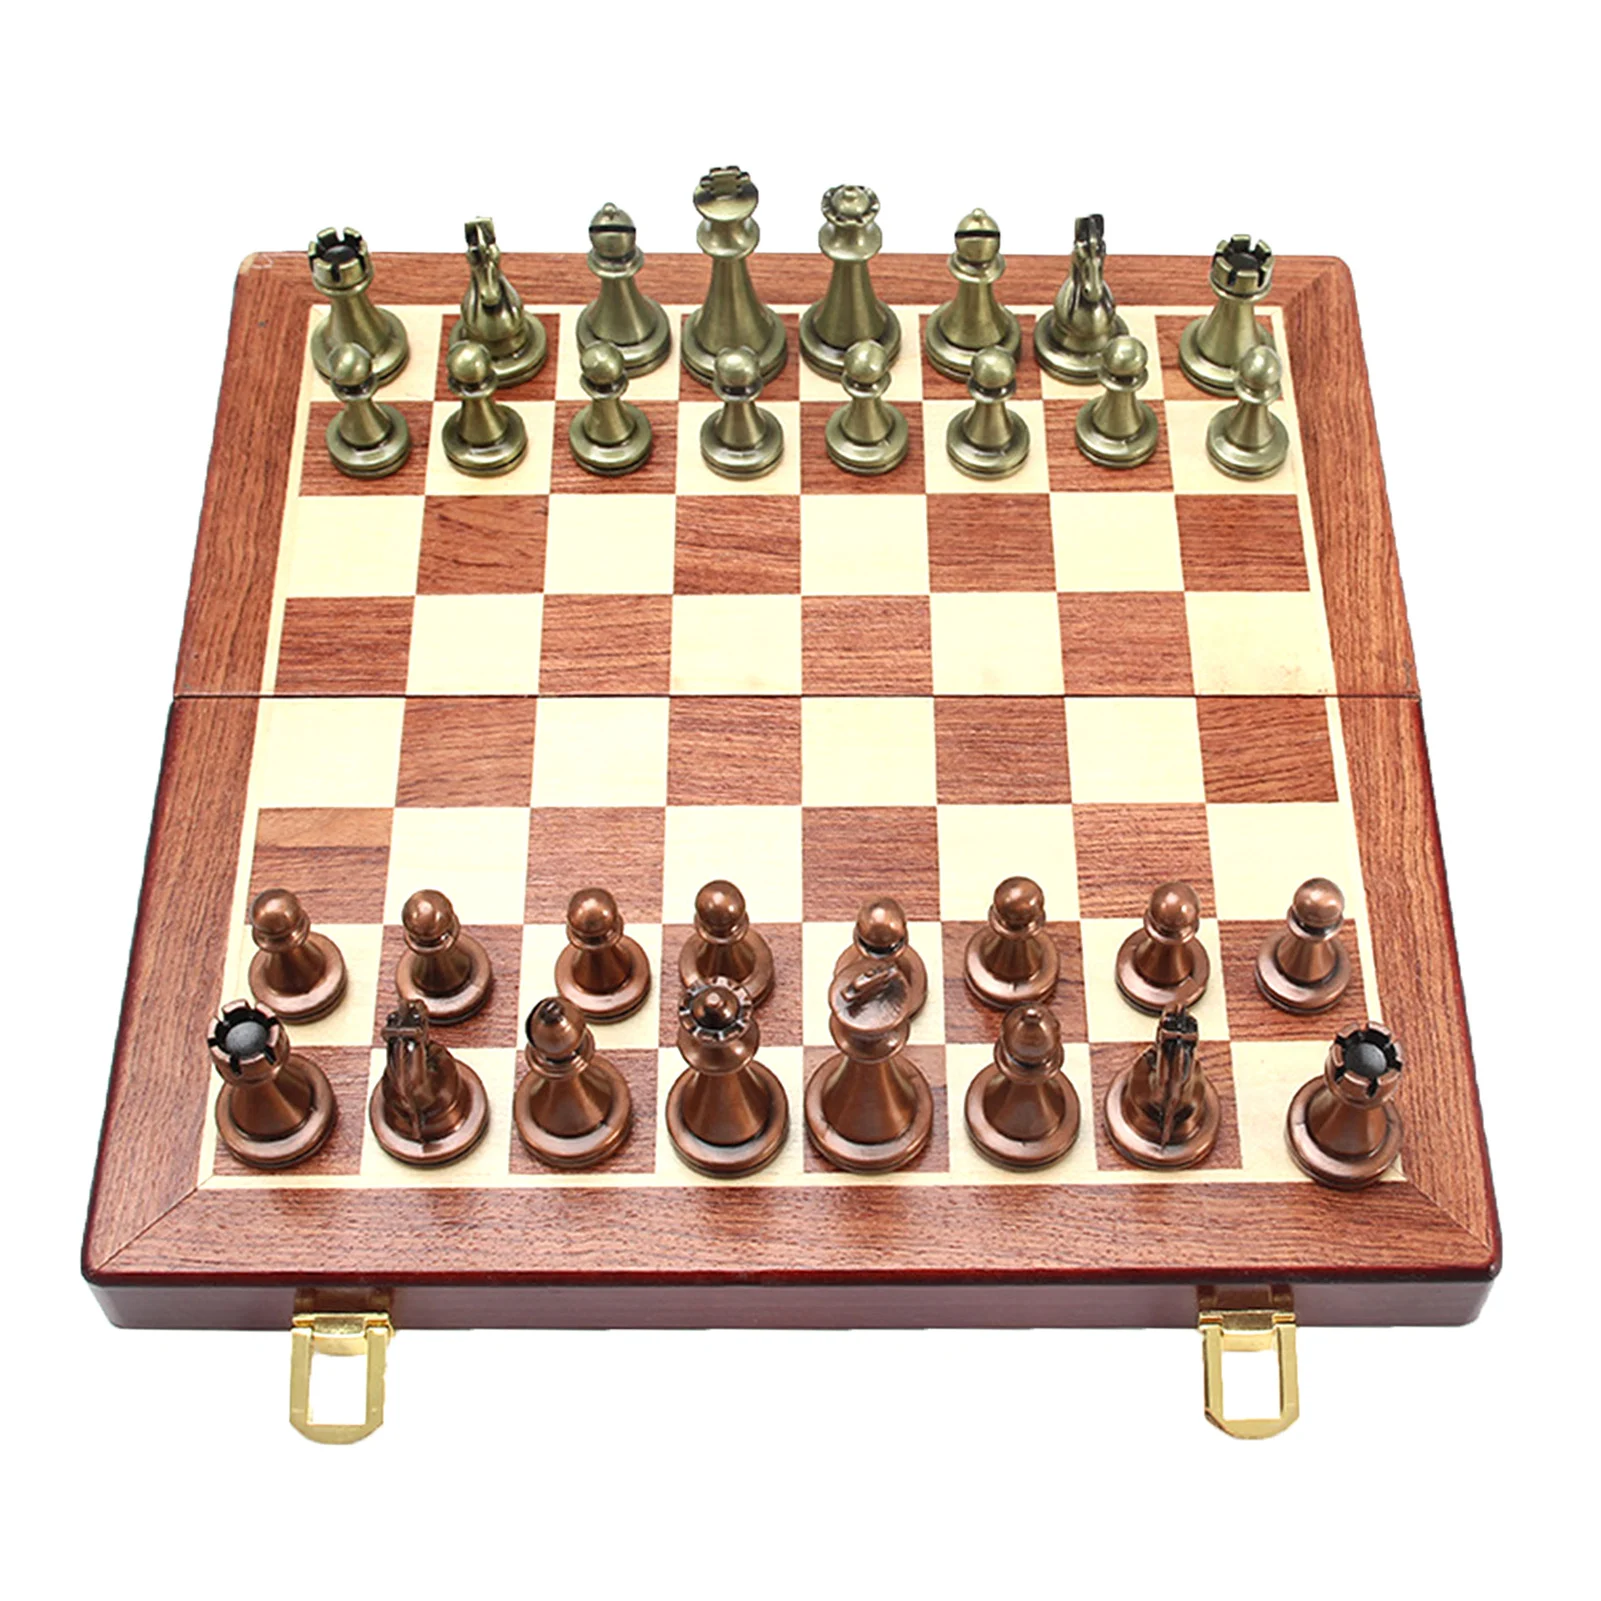 

Шахматы Деревянные международные шахматы складные шахматные игры Шашки головоломка игра шахматы подарки для взрослых детей начинающих